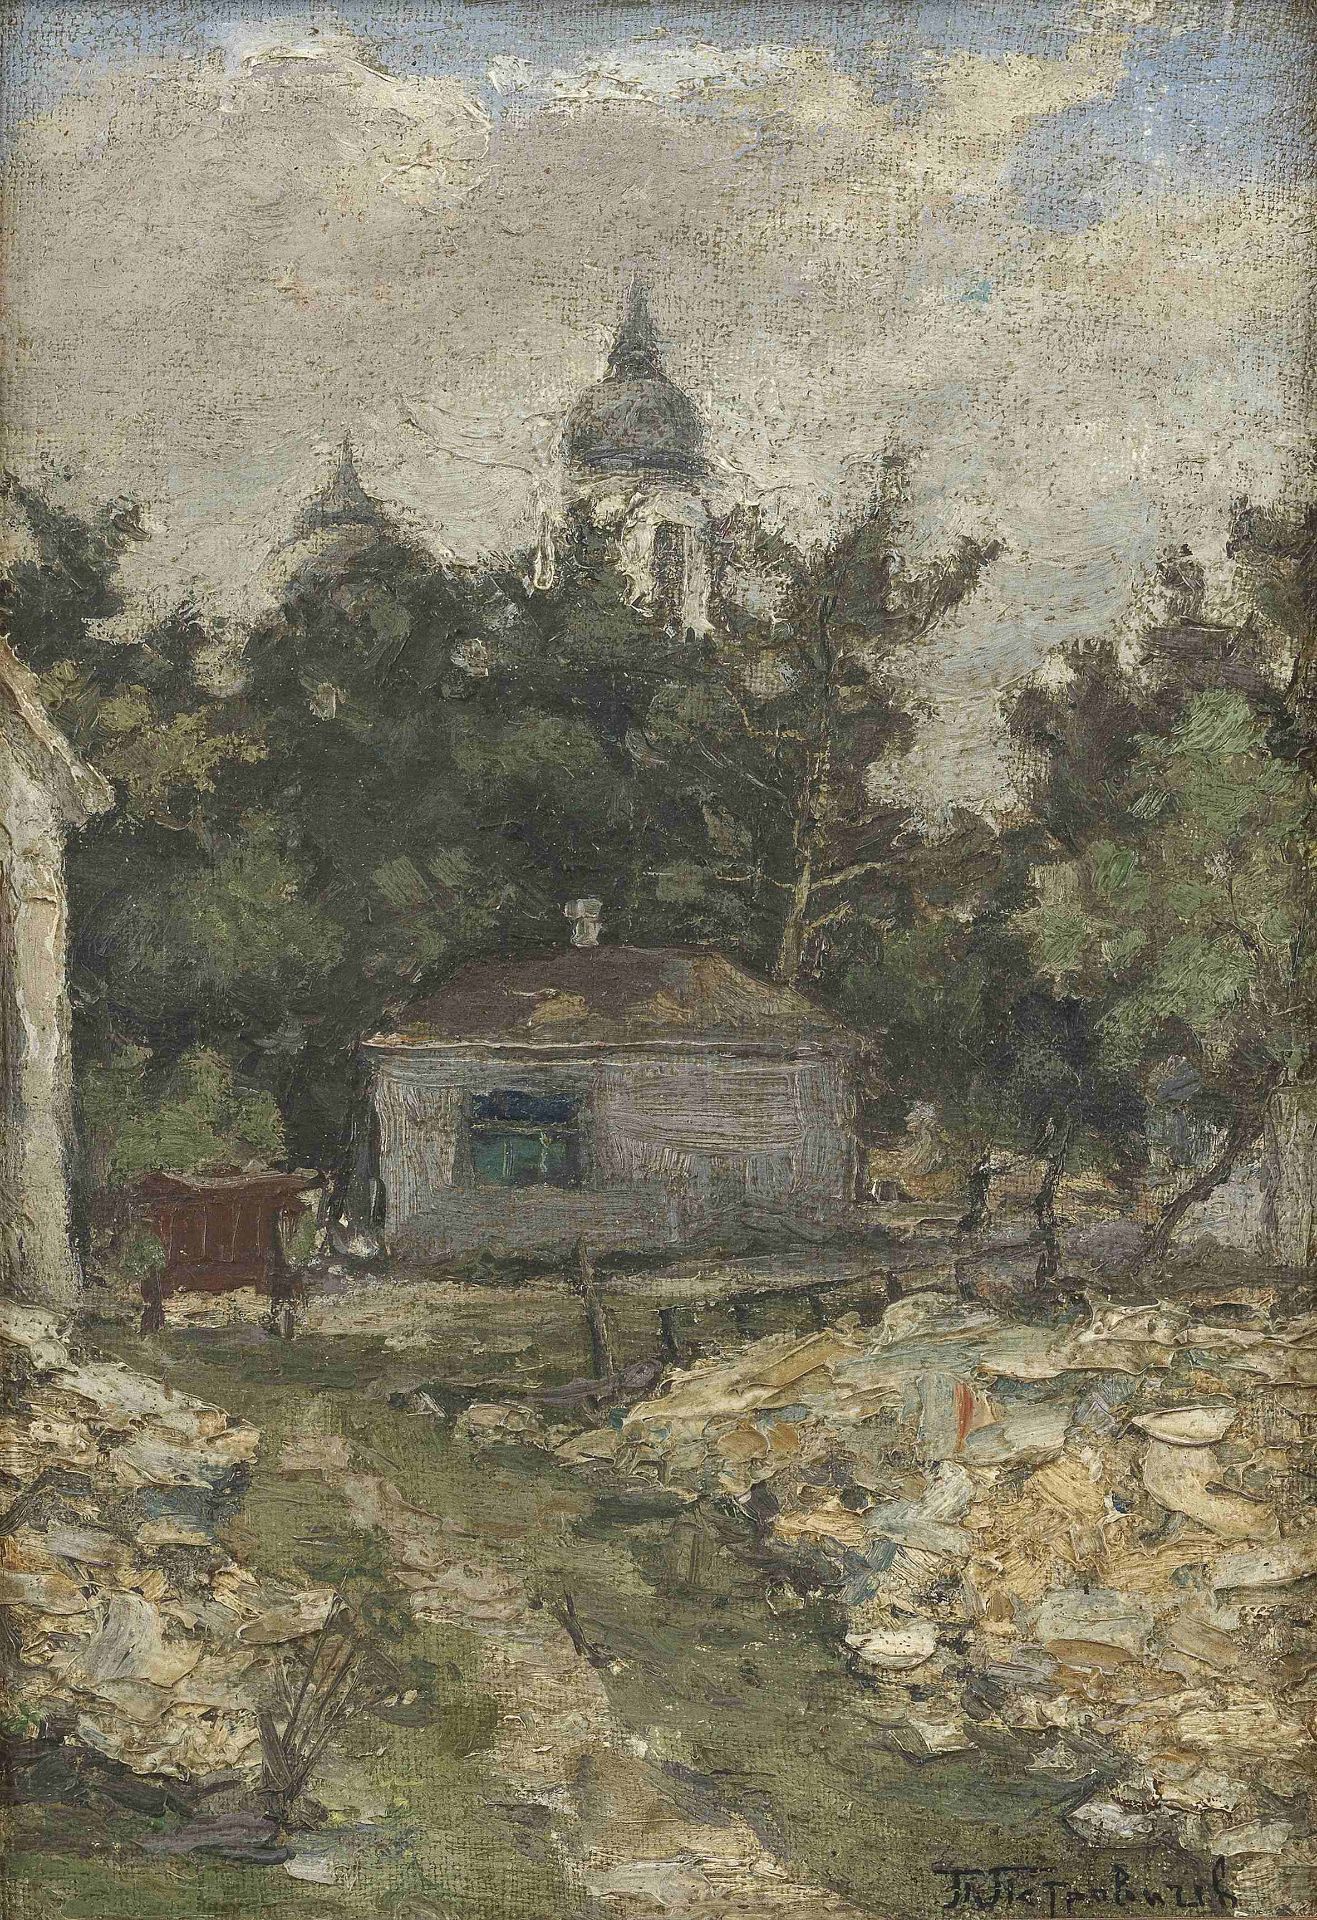 Petr Ivanovich Petrovichev (Russian, 1874-1947) Summer landscape